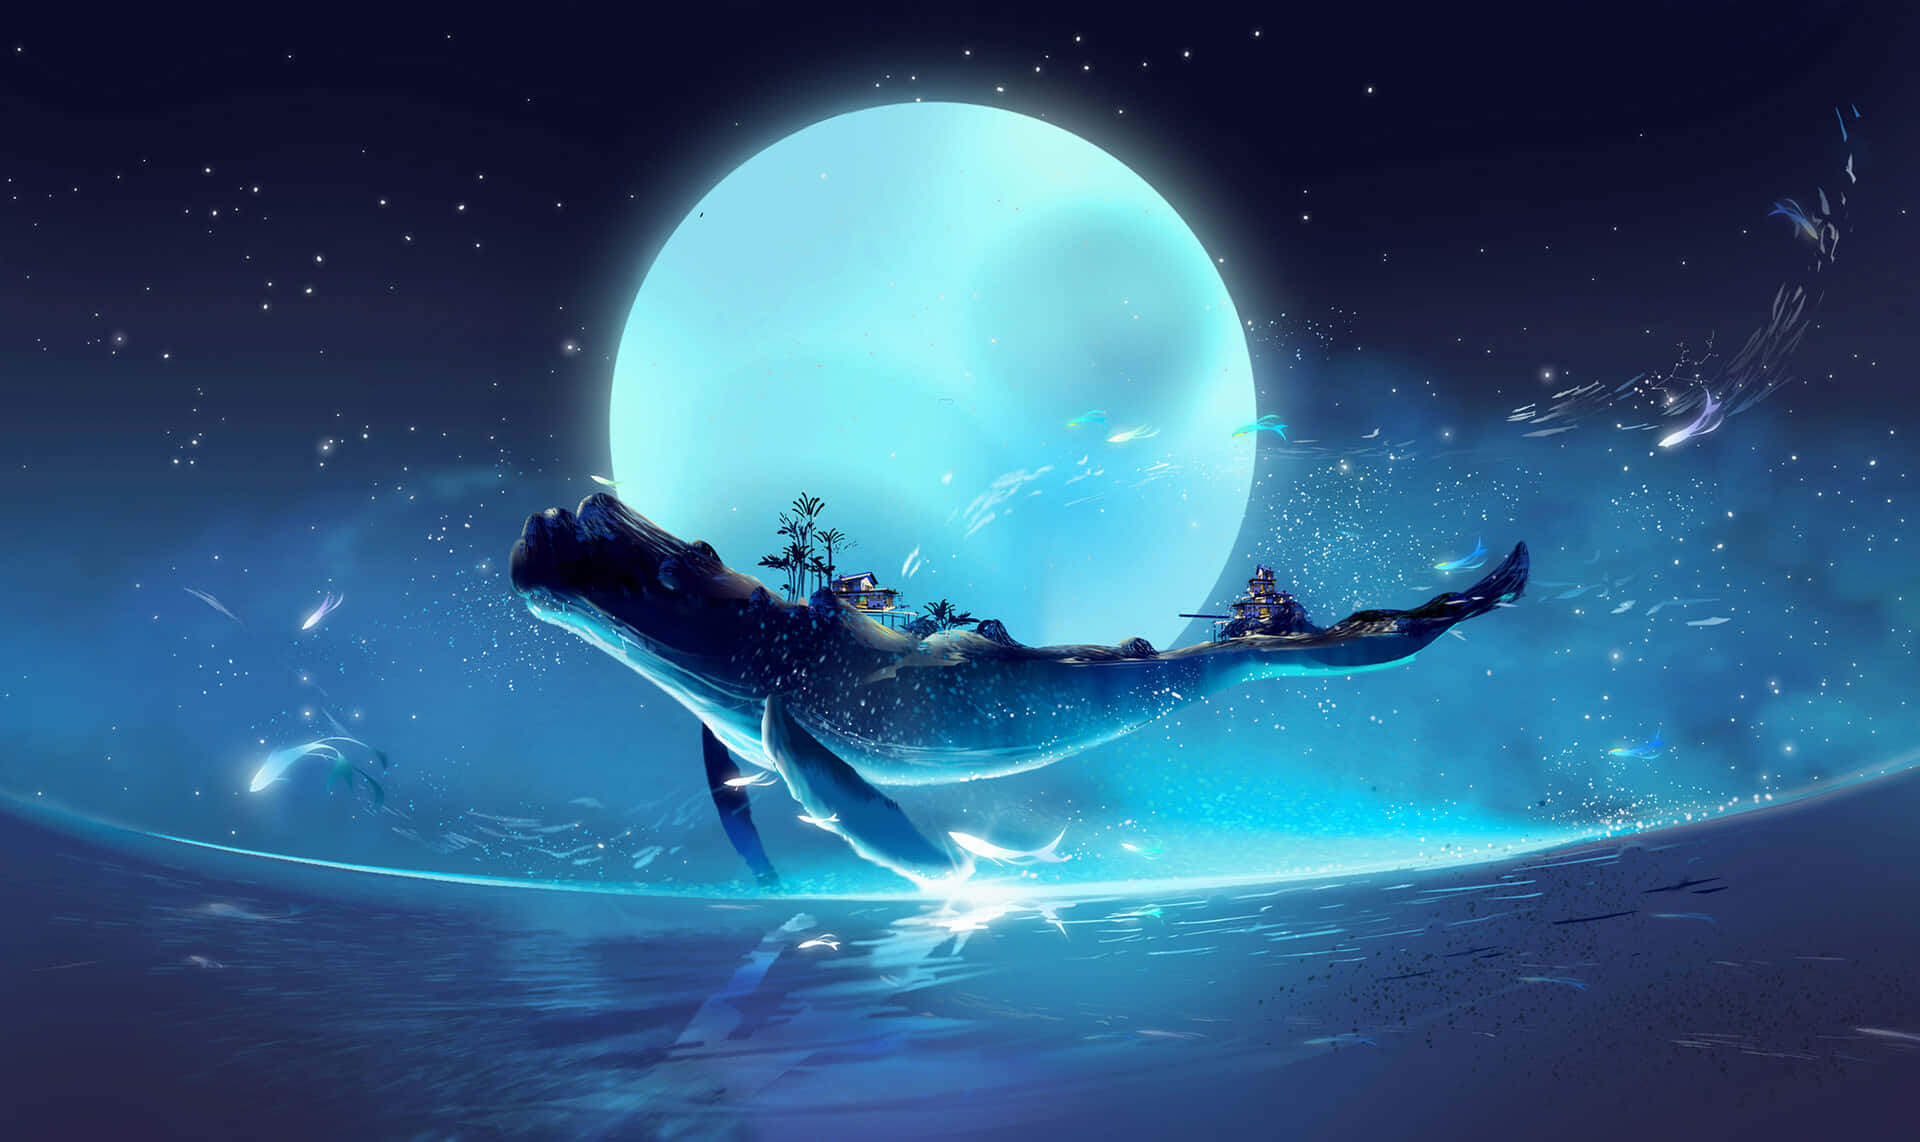 Imagende Arte Fantasía De Una Ballena Azul Saltando Por Encima De La Luna En El Océano.